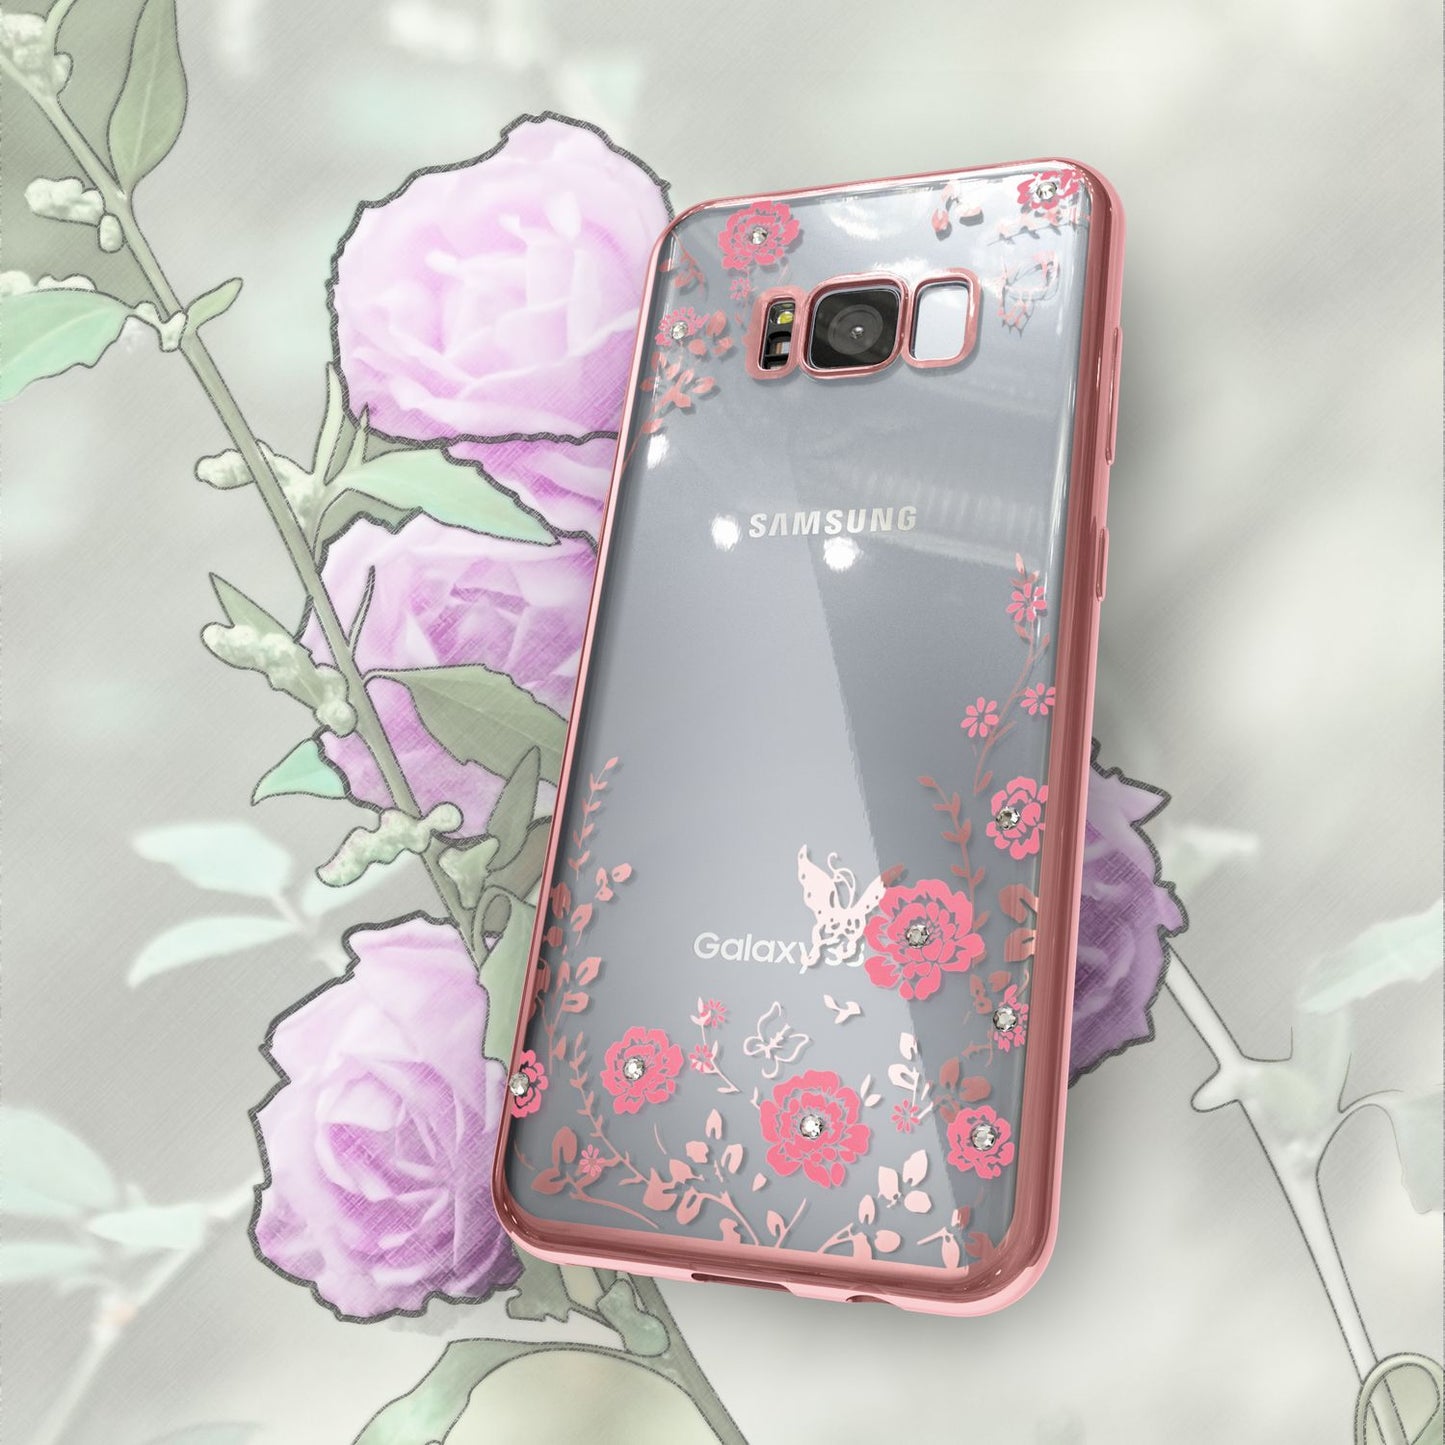 Samsung Galaxy S8 Handy Hülle von NALIA, Durchsichtiges Slim Silikon Blumen Case